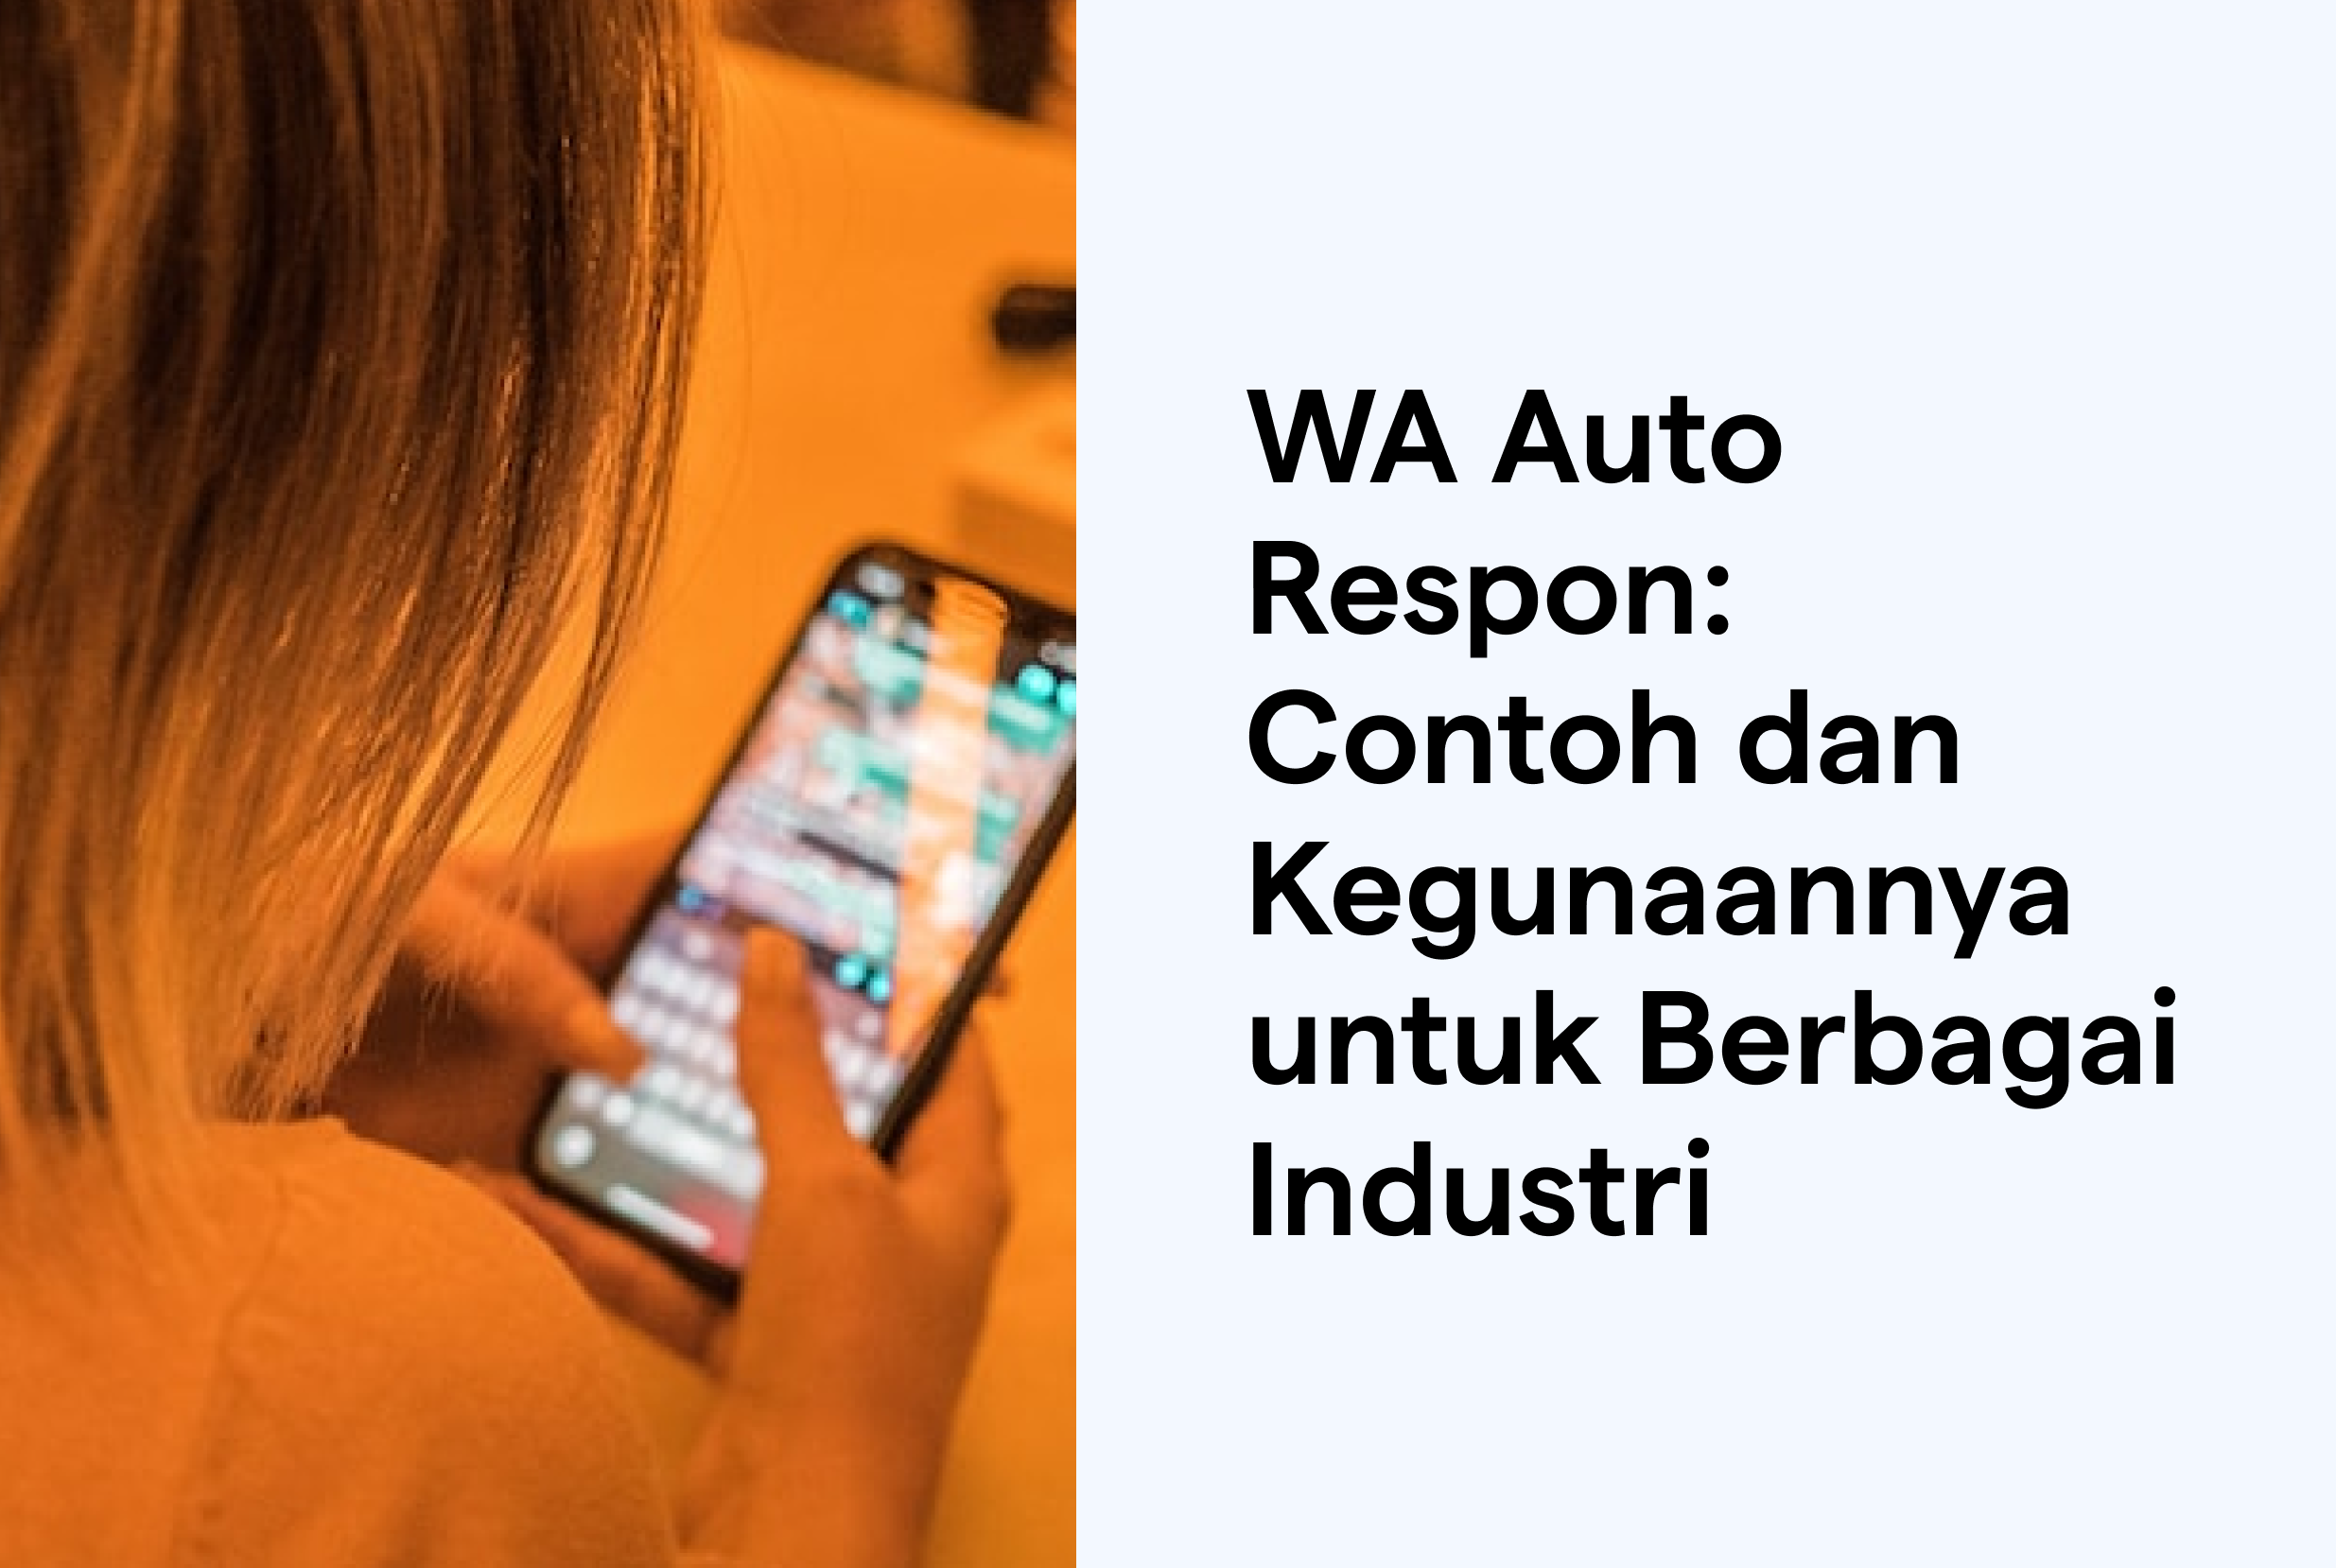 WA Auto Respon: Contoh dan Kegunaannya untuk Berbagai Industri